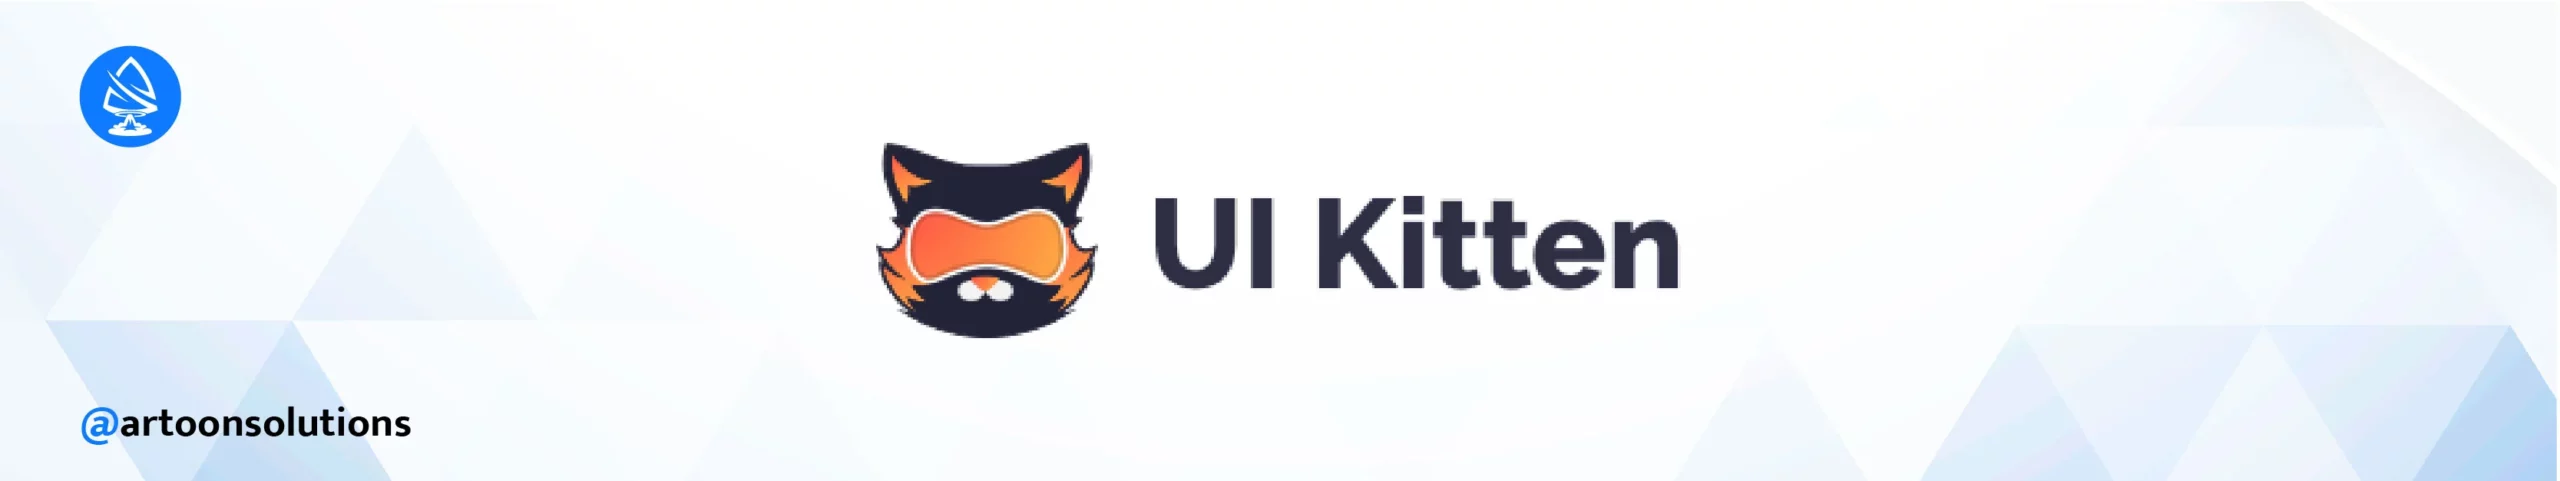 UI Kitten